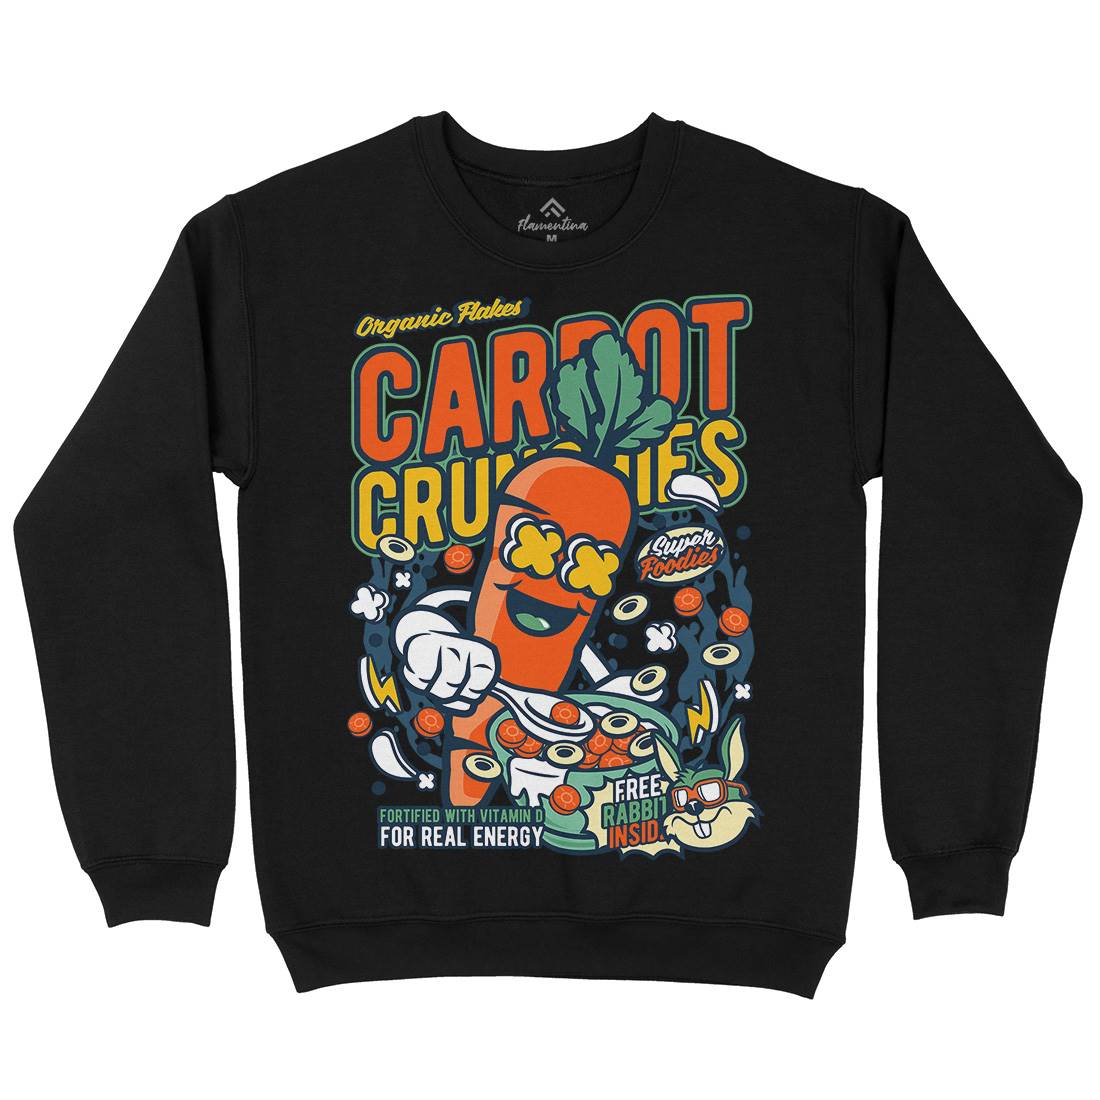 Carrot Crunchies Kids Crew Neck Sweatshirt Food C509